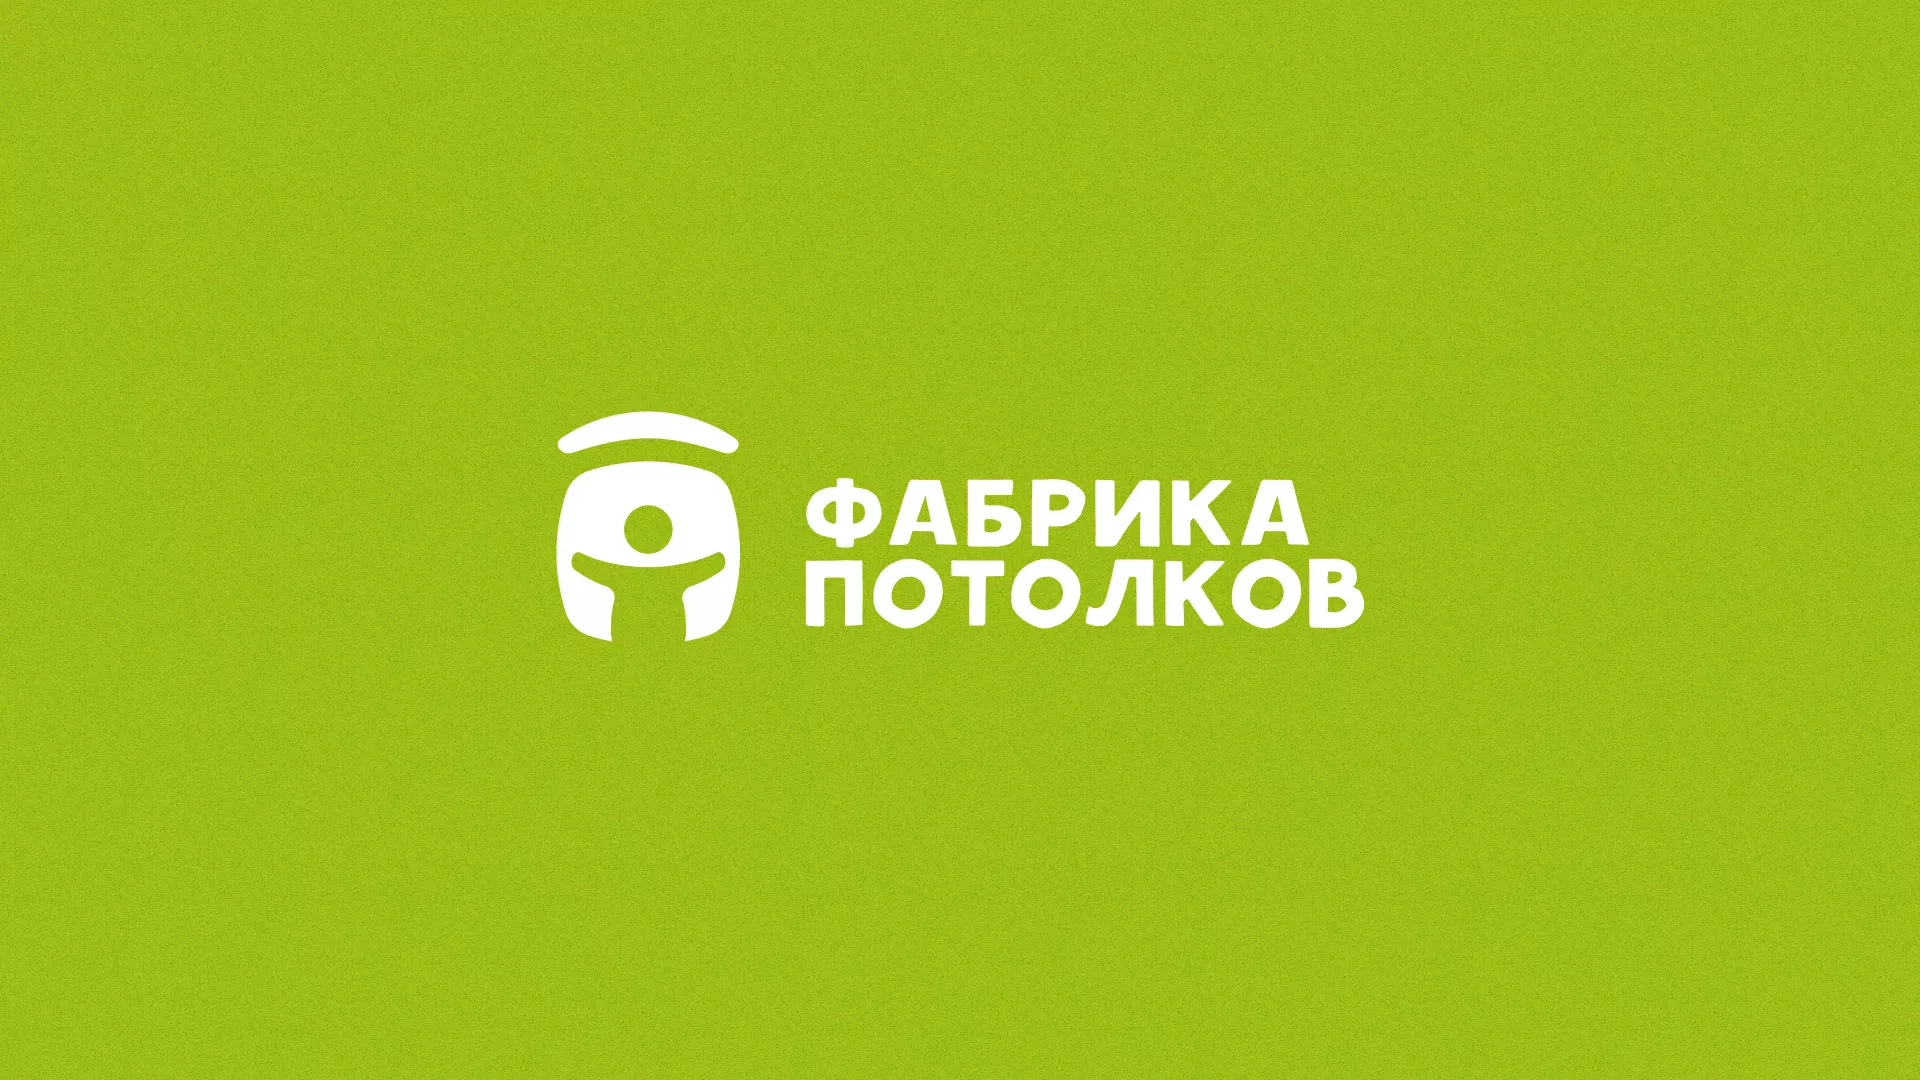 Разработка логотипа для производства натяжных потолков в Кыштыме